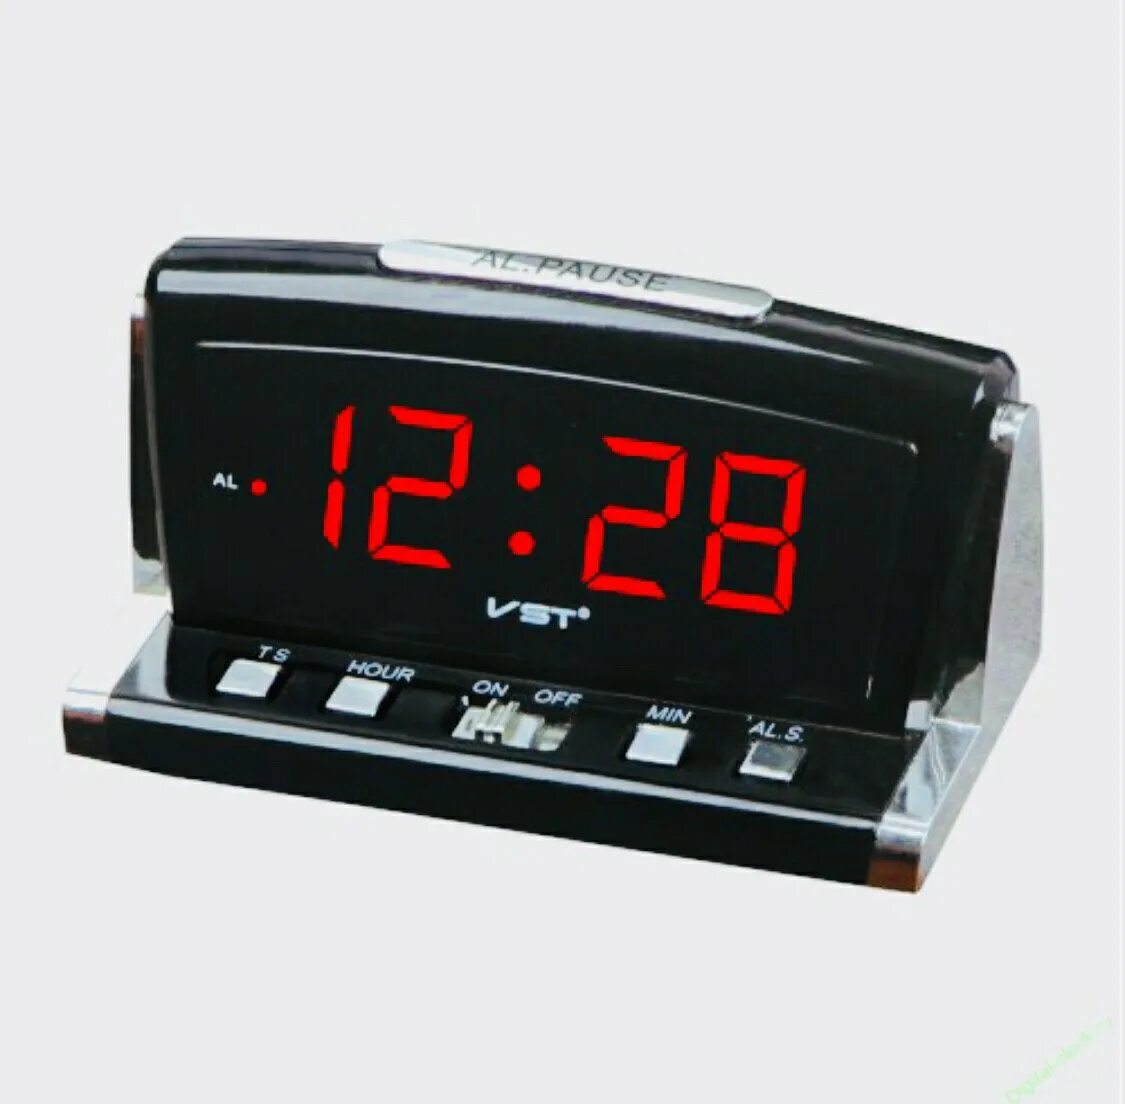 Часы настольные VST 718-4. Часы VST 718-4. Часы электронные VST 718. Часы-будильник настольные VST 718. Сетевые настольные часы